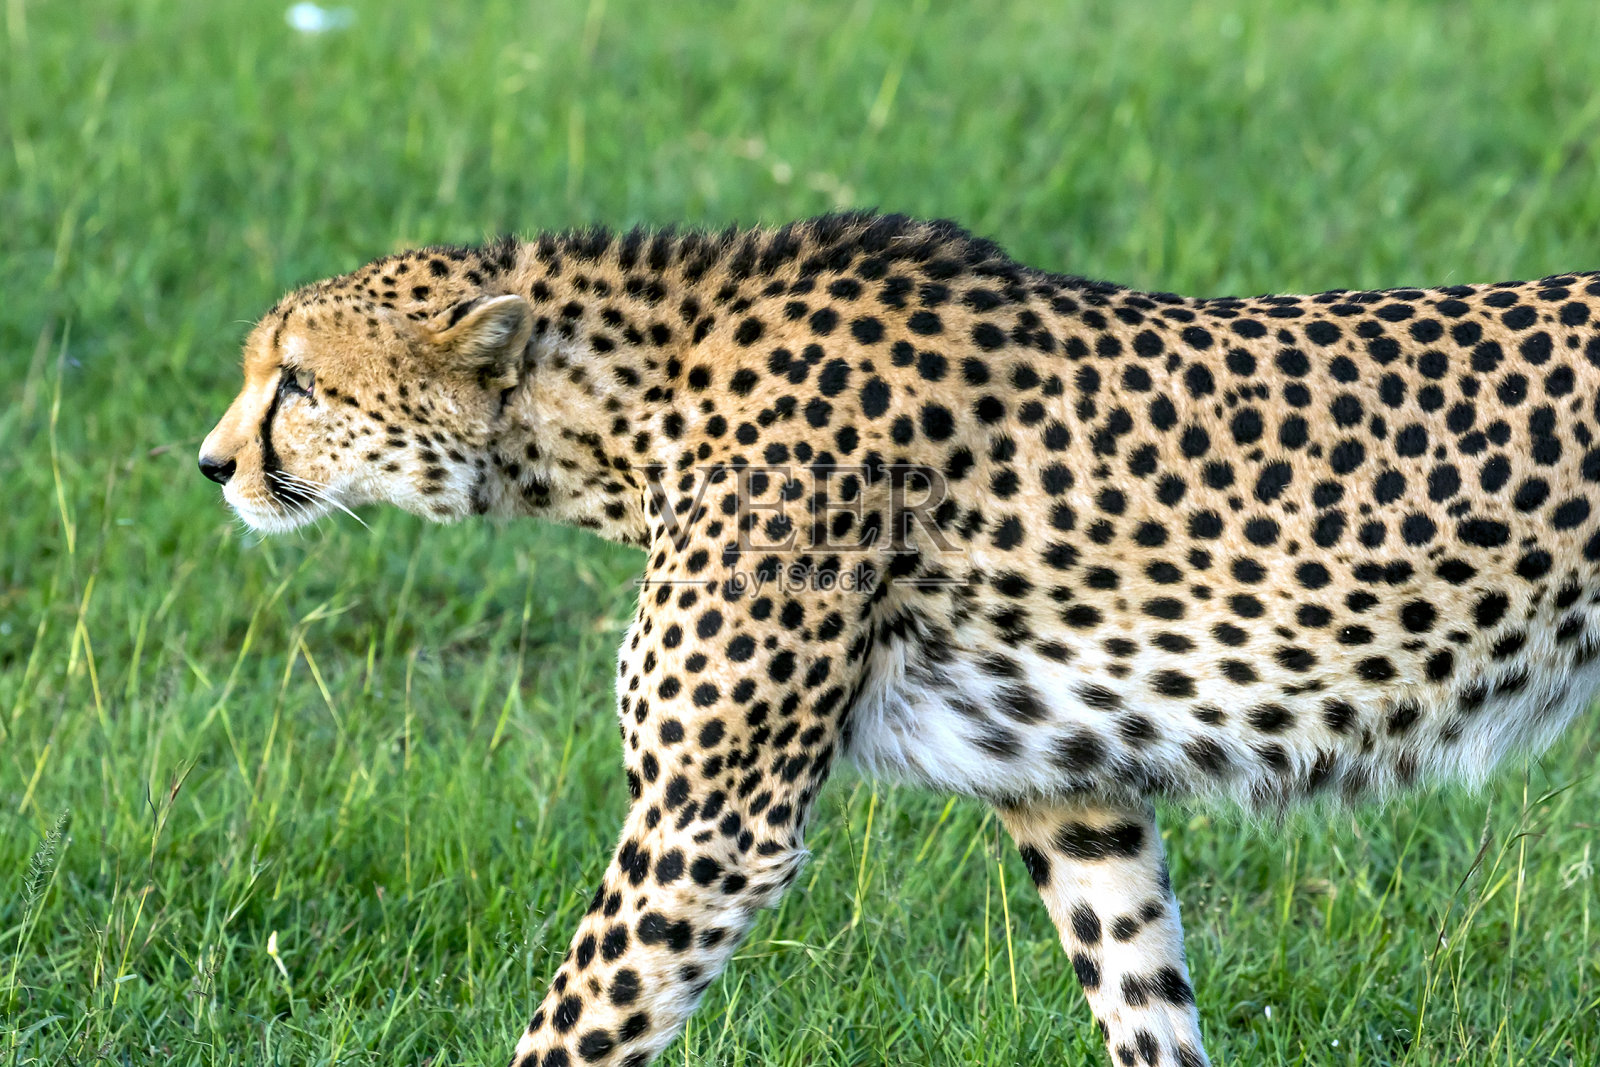 南非豹子与雌性角马激战5小时 成功捕食其幼崽